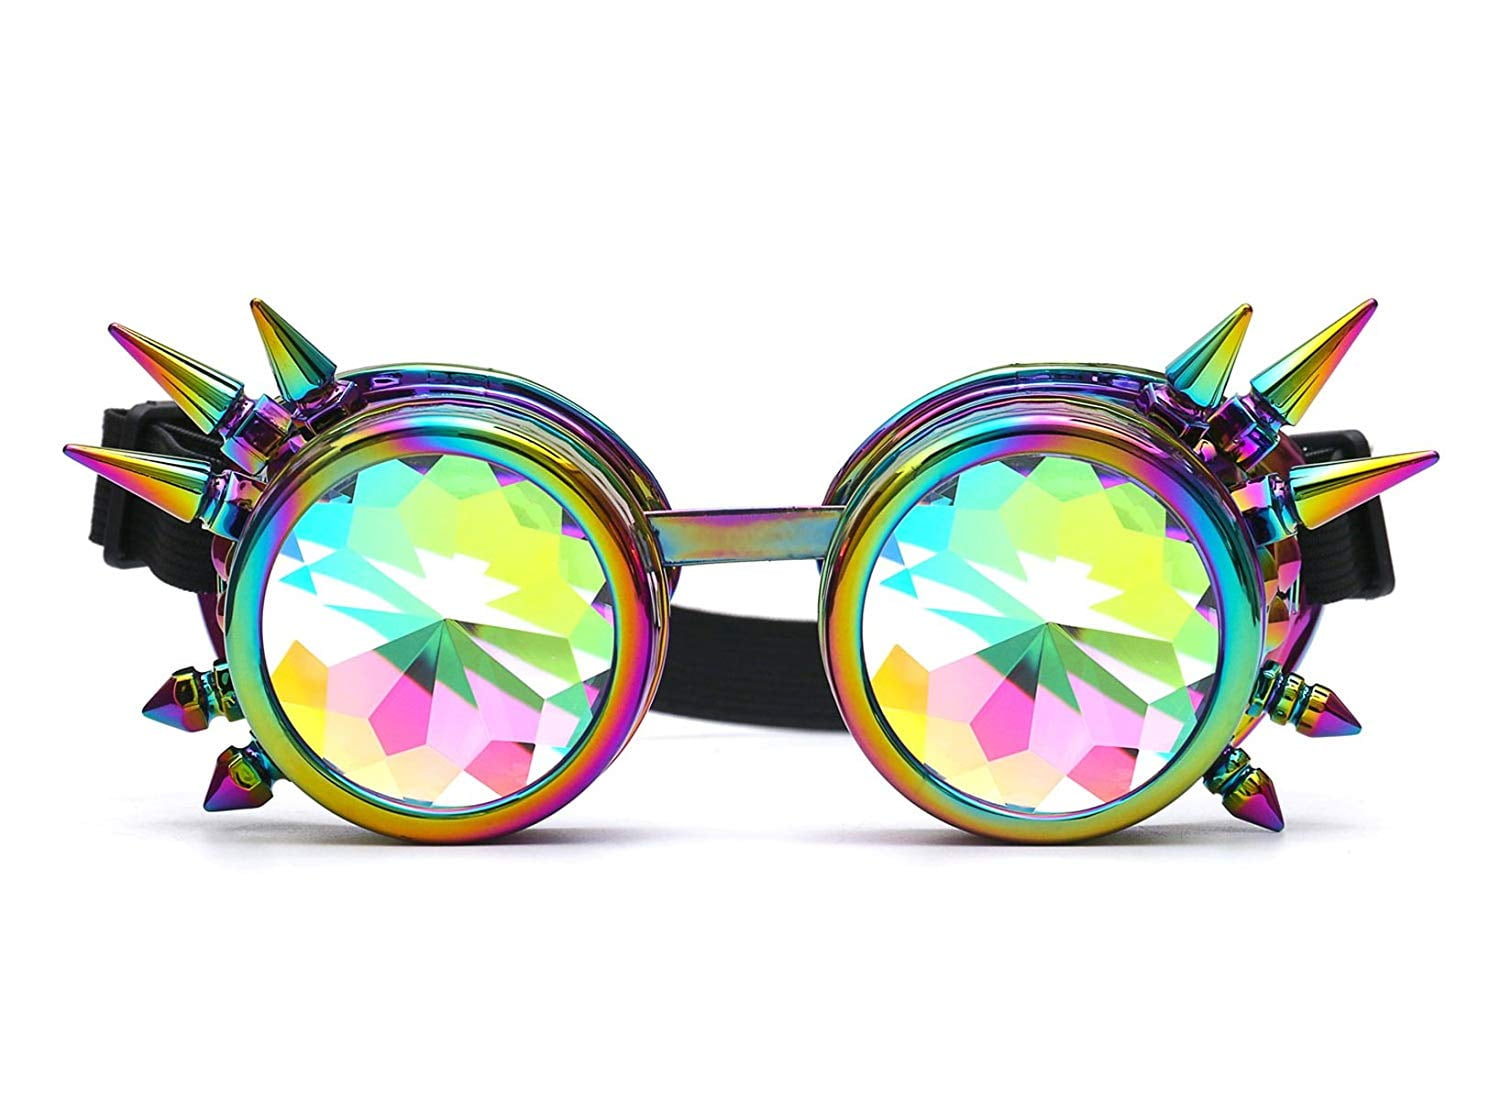 DODOING Gafas de caleidoscopio Steampunk Rave Gafas de cristal Rainbow Caleidoscopio Rave Gafas de cristal Rainbow Crystal Lens 